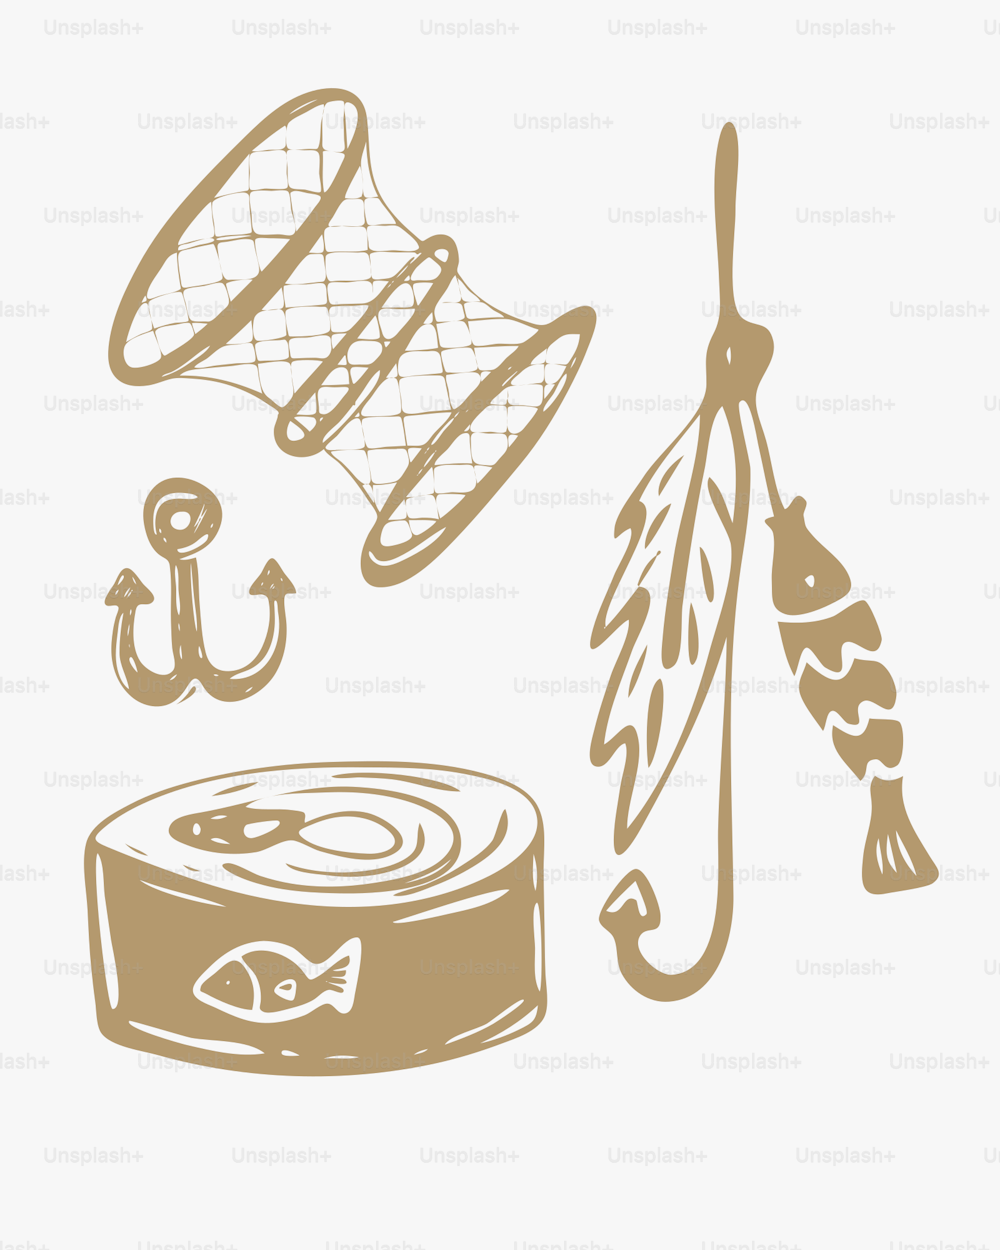 un dibujo de una lata de pescado enlatado y un anzuelo